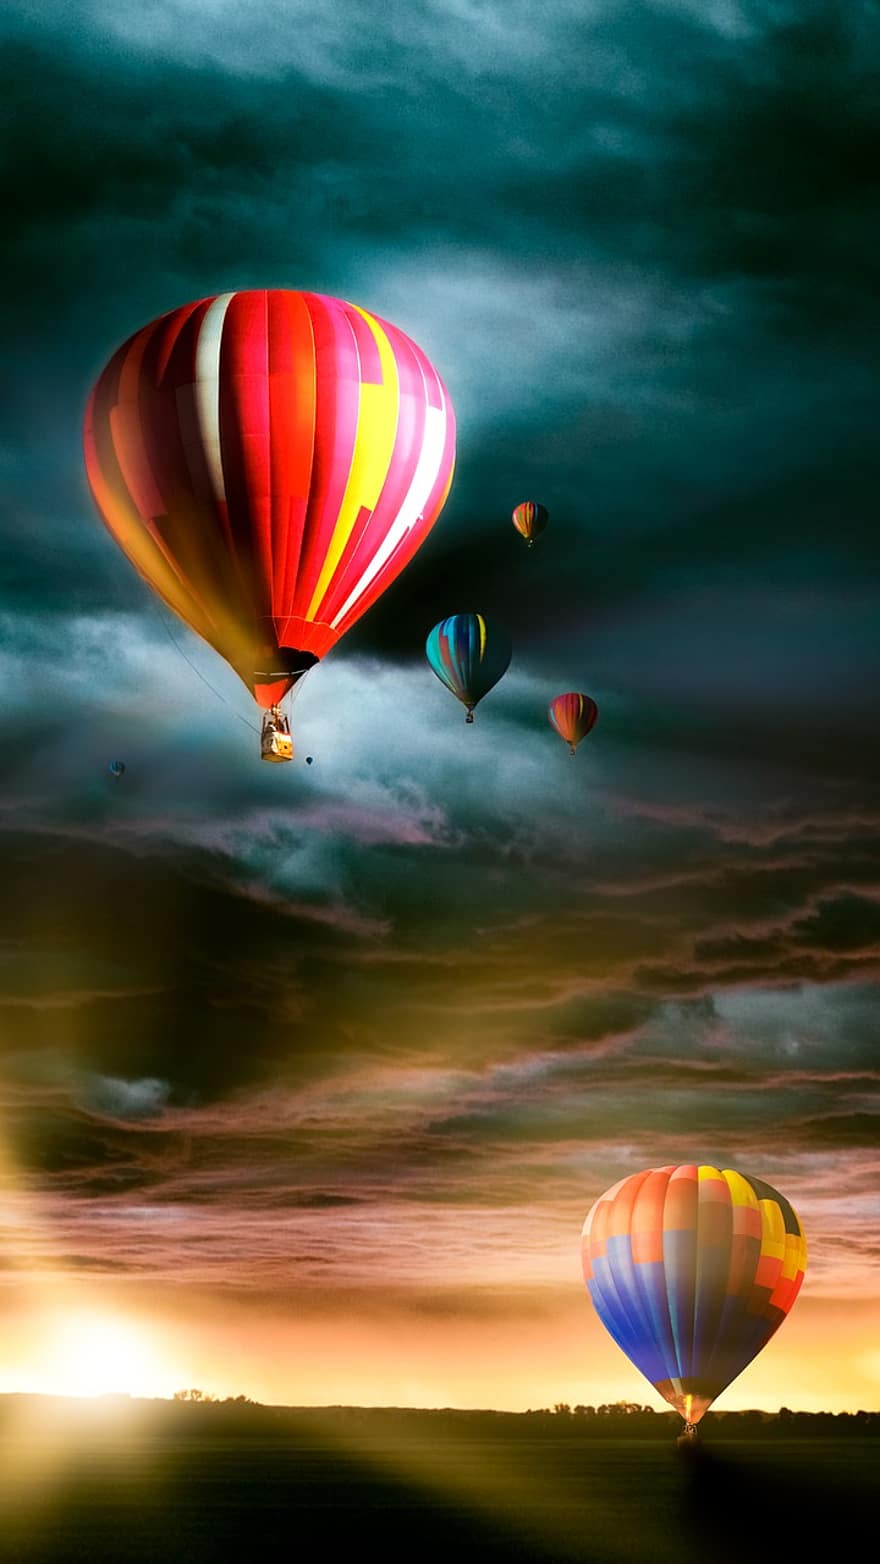 балони с горещ въздух, приключение, дом, на открито, балон с горещ въздух, летене, многоцветни, въздухоплавателно средство, спорт, занимание за свободното време, транспорт